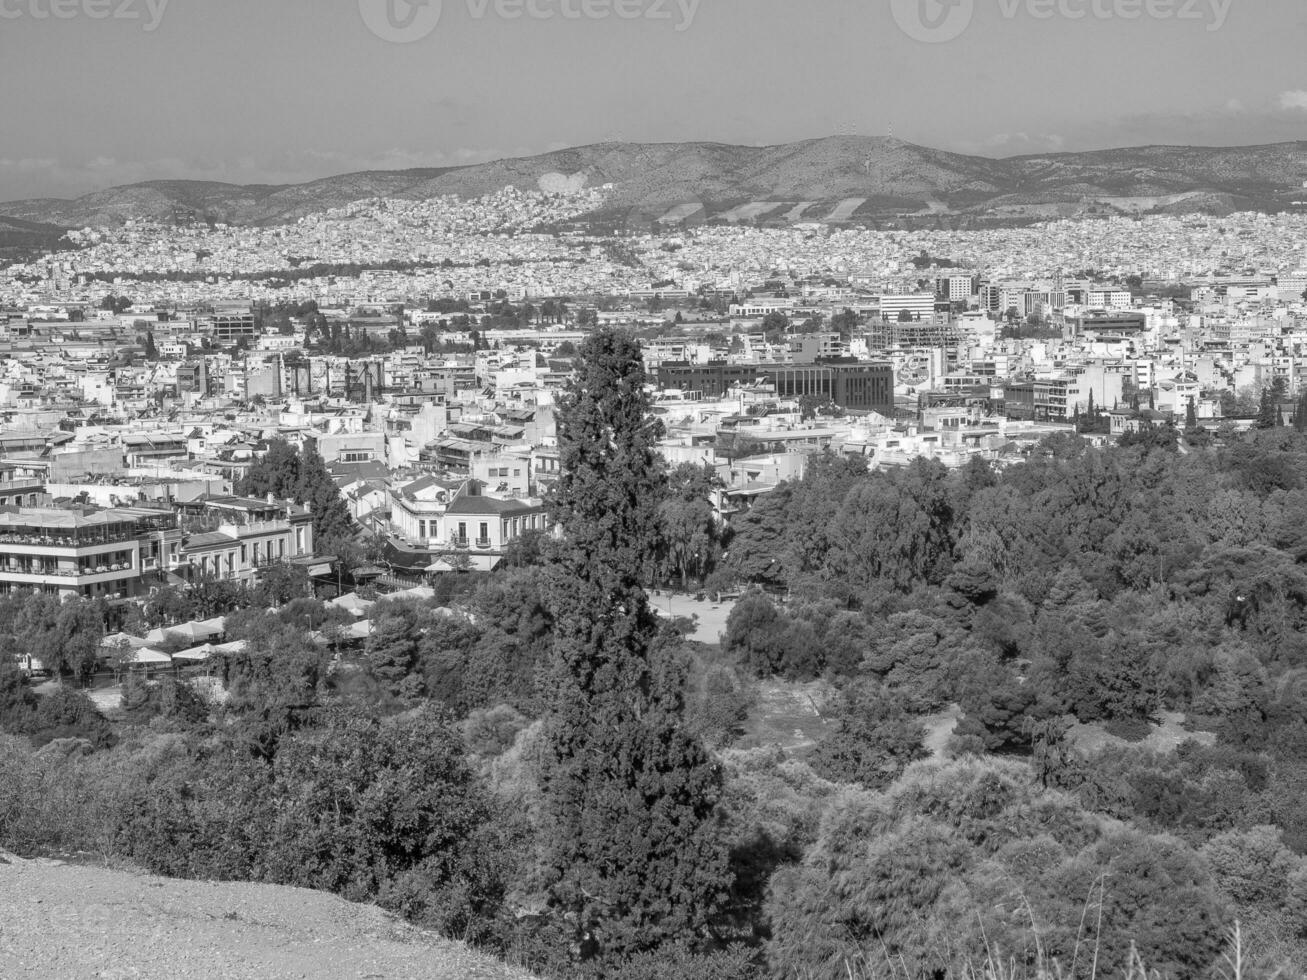 de stad van Athene foto